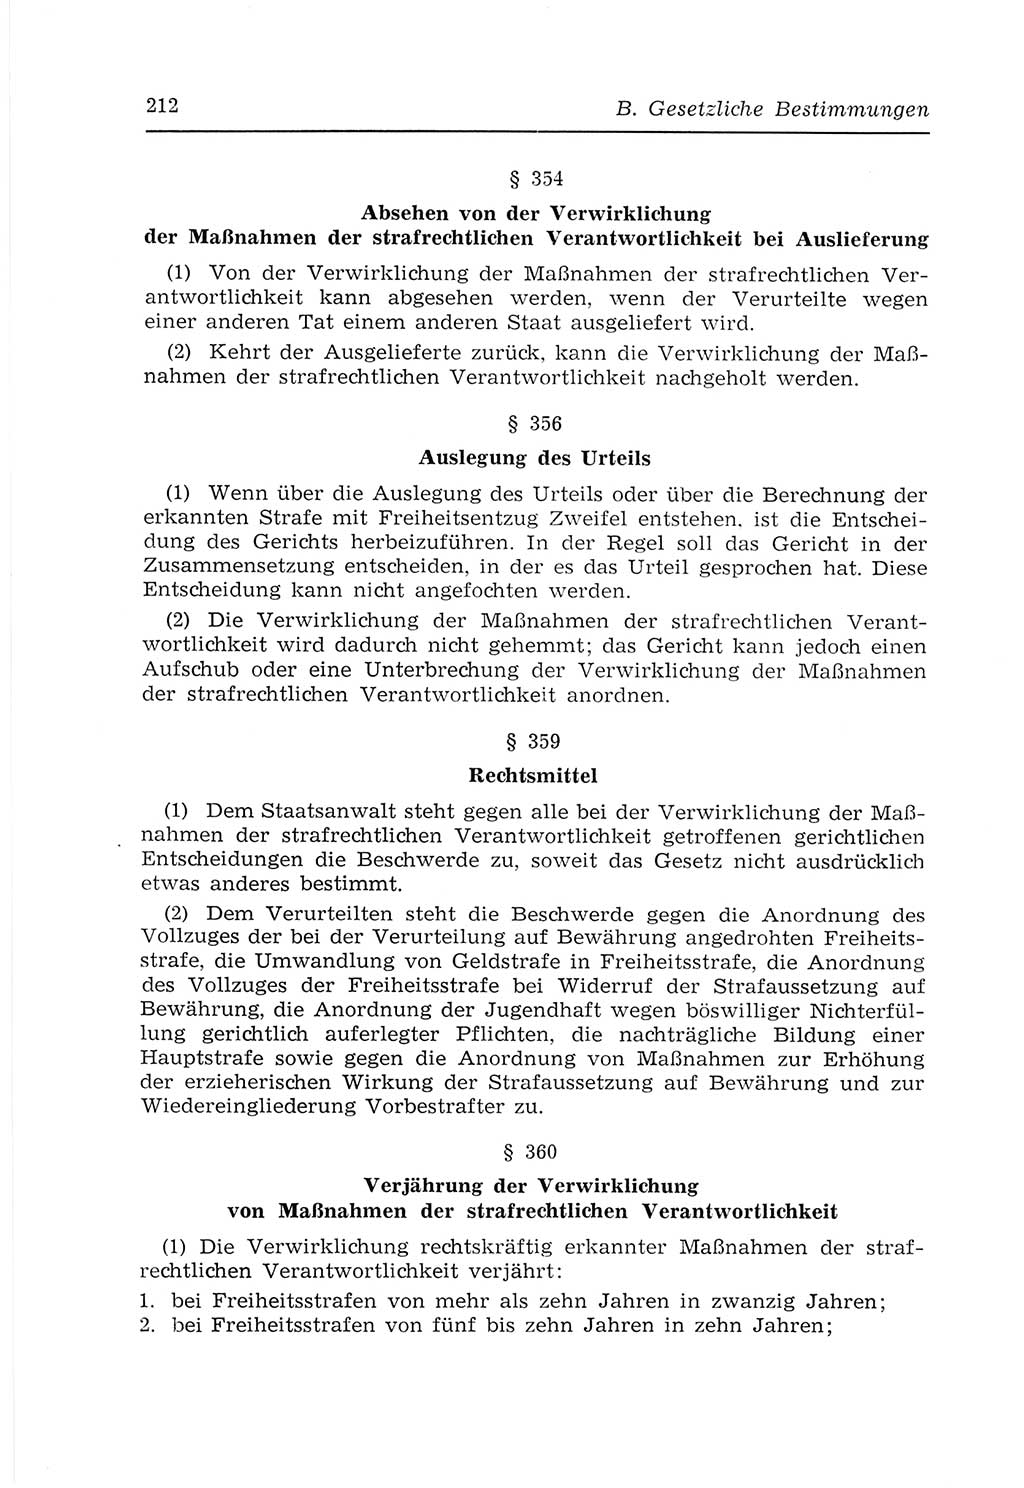 Strafvollzugs- und Wiedereingliederungsgesetz (SVWG) der Deutschen Demokratischen Republik (DDR) 1968, Seite 212 (SVWG DDR 1968, S. 212)